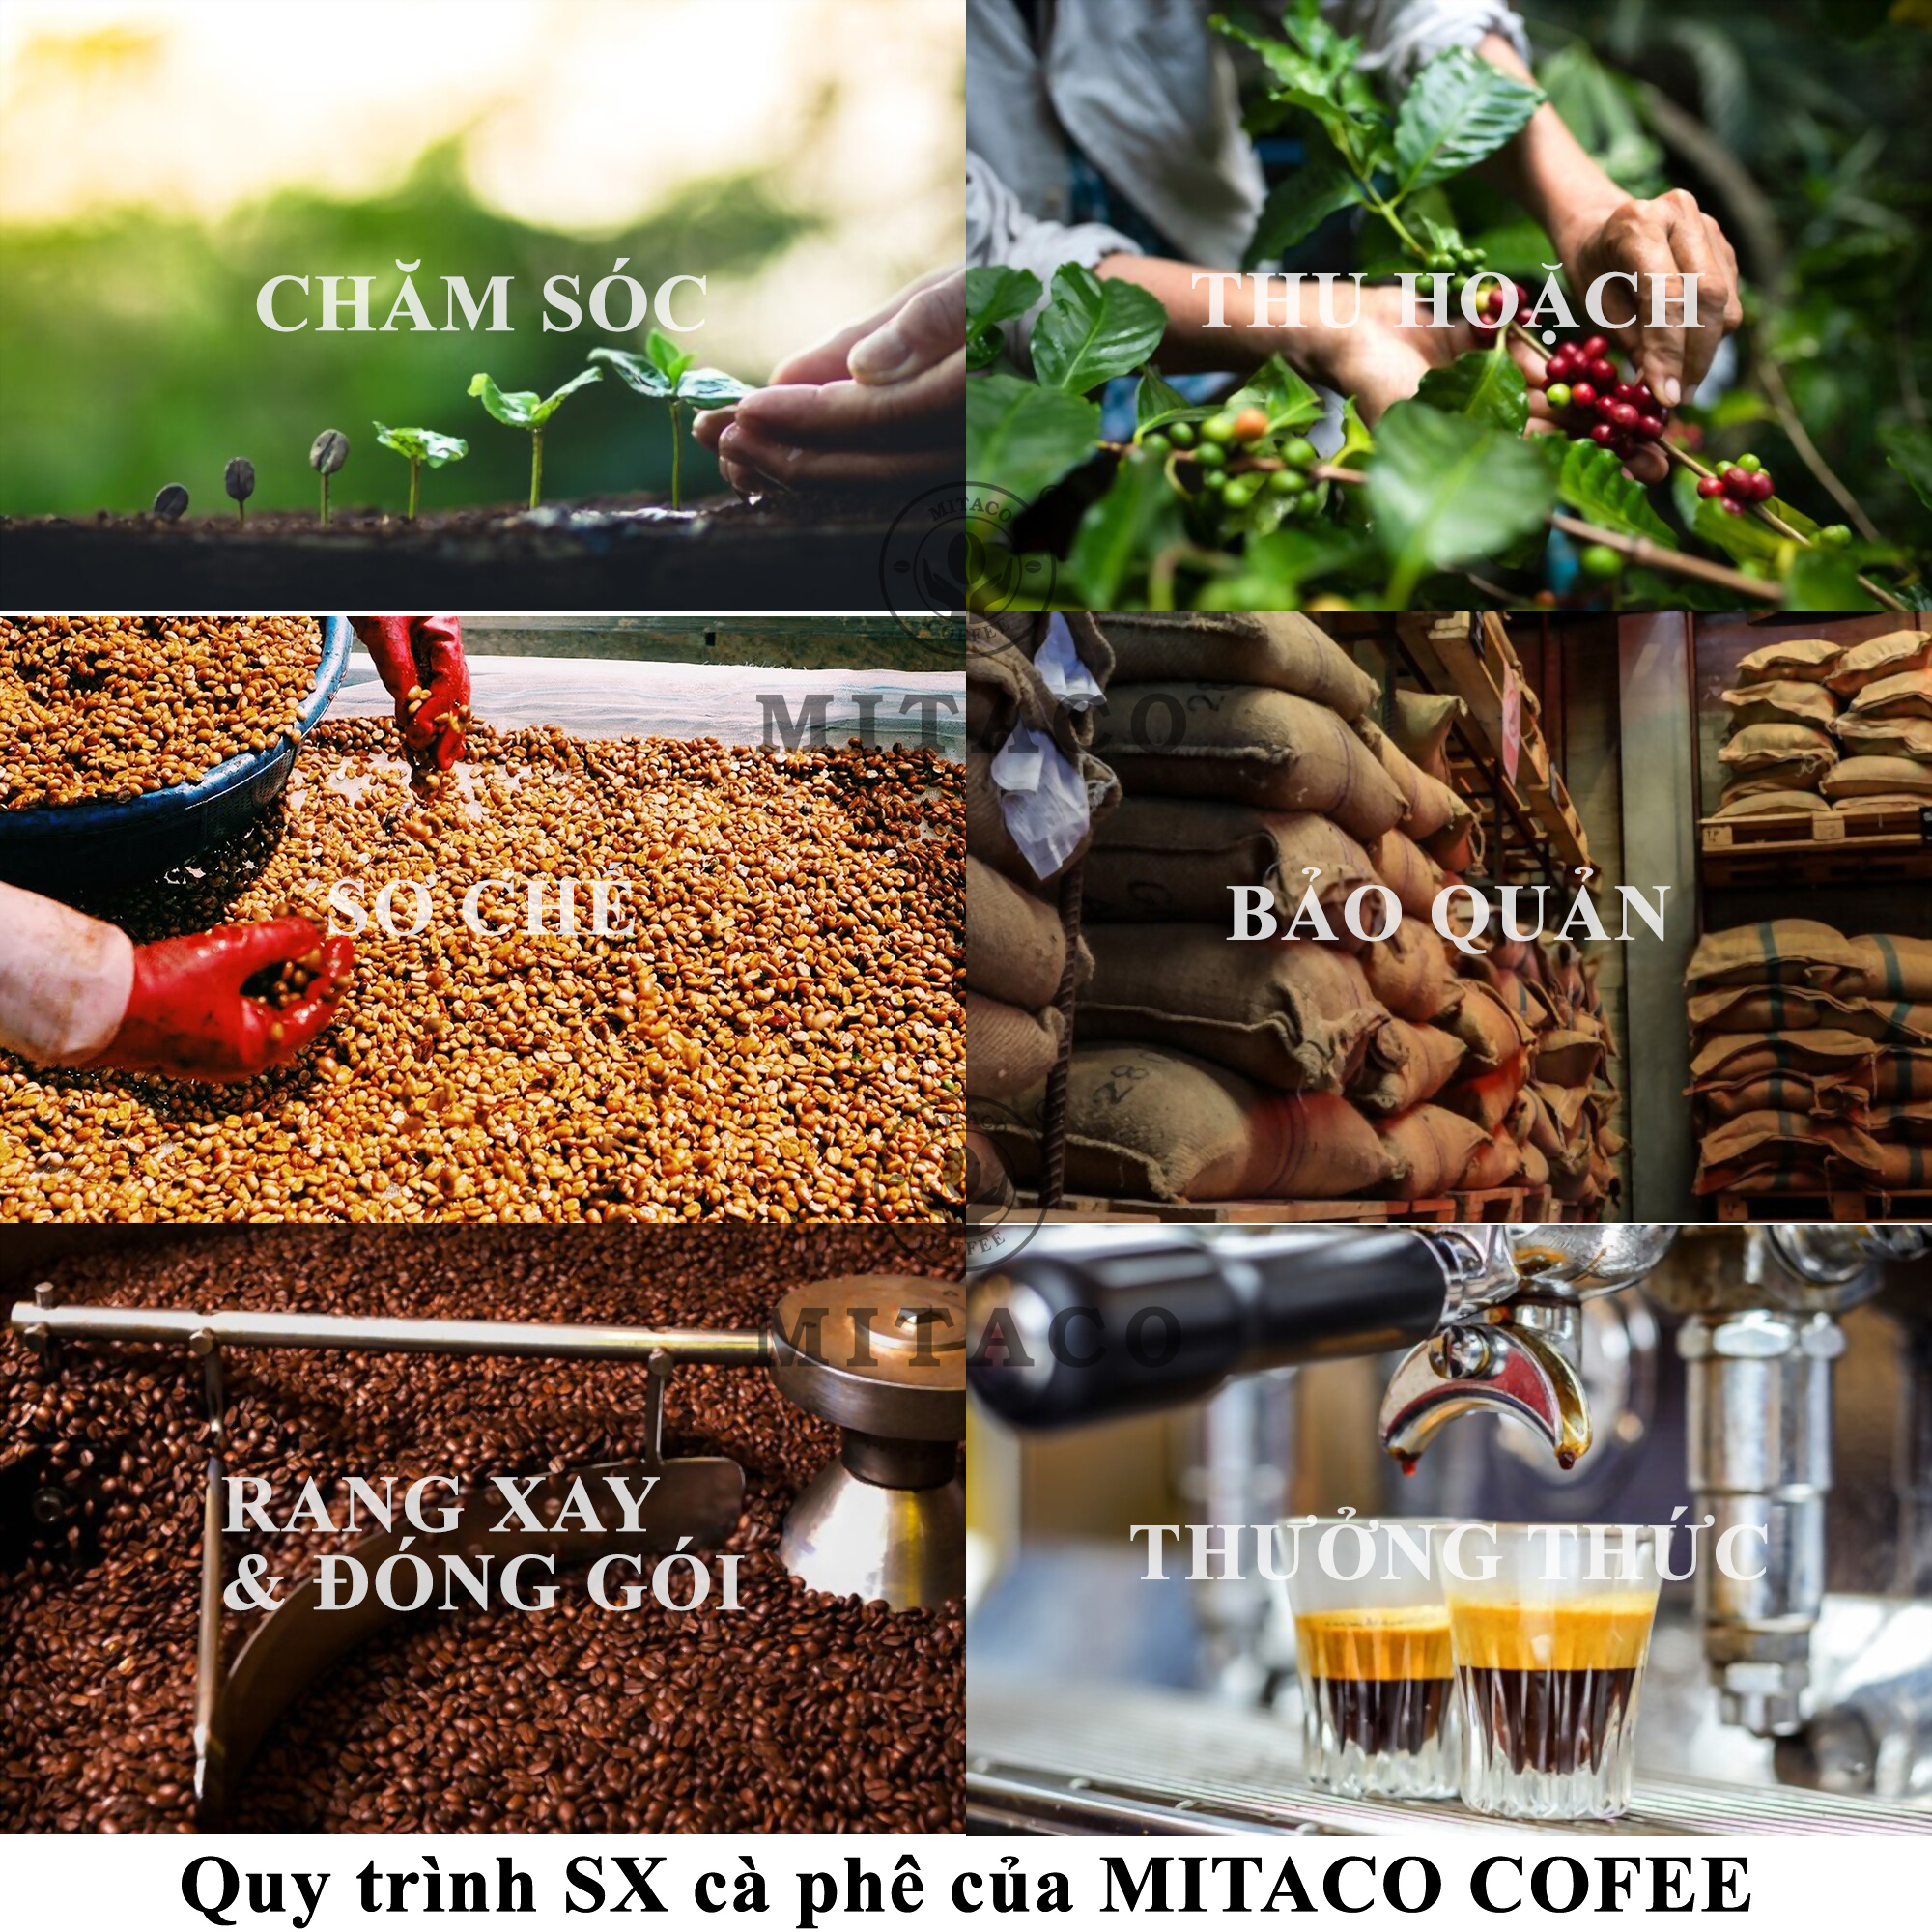 Cà Phê Culi Blend Nguyên Chất MITACO COFFEE (Gói 200g)